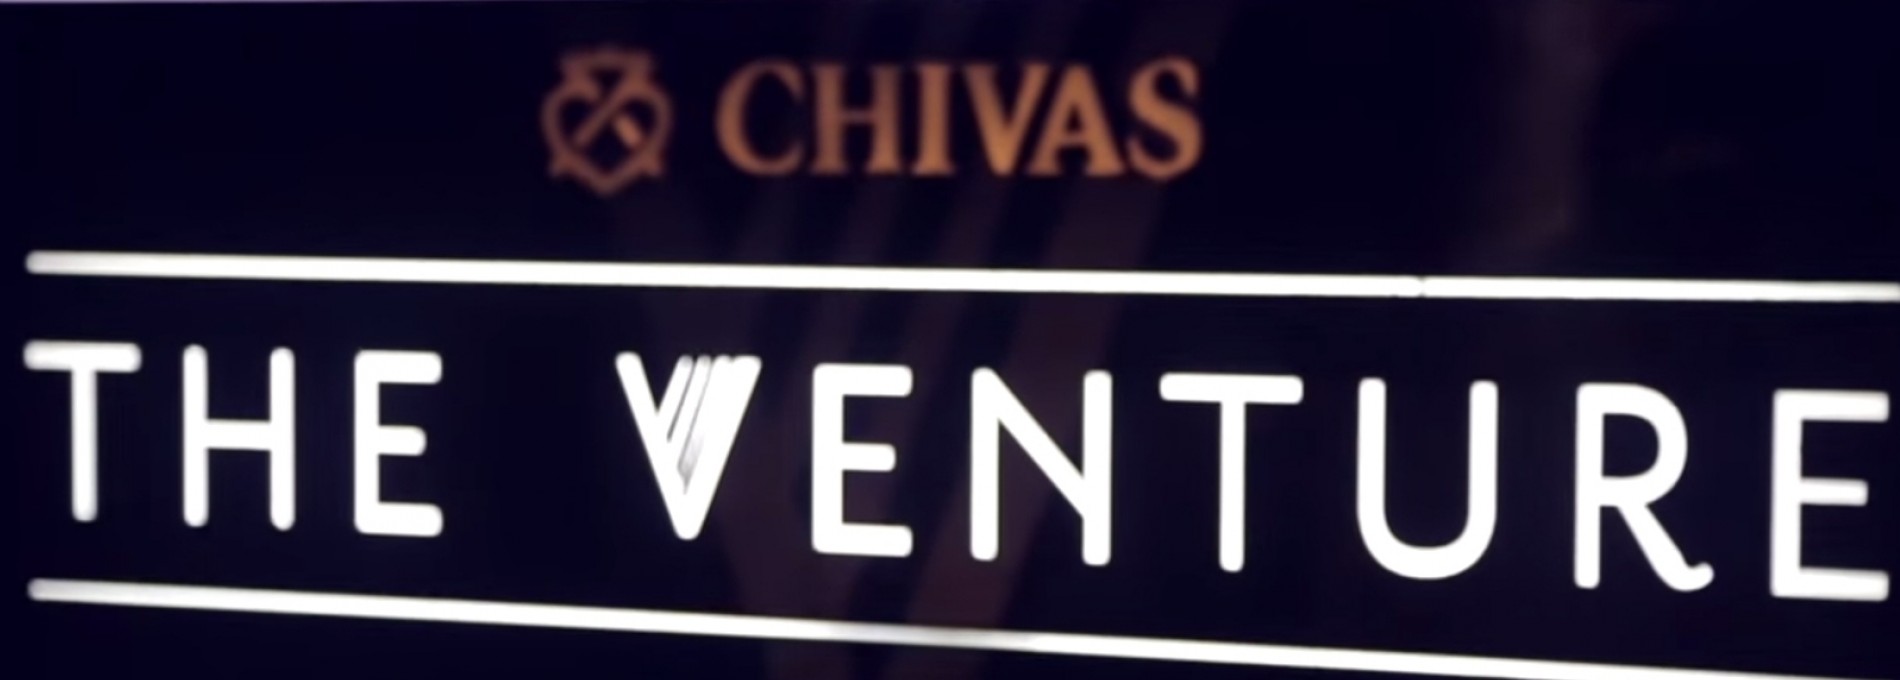 Conheça o The Venture por Chivas